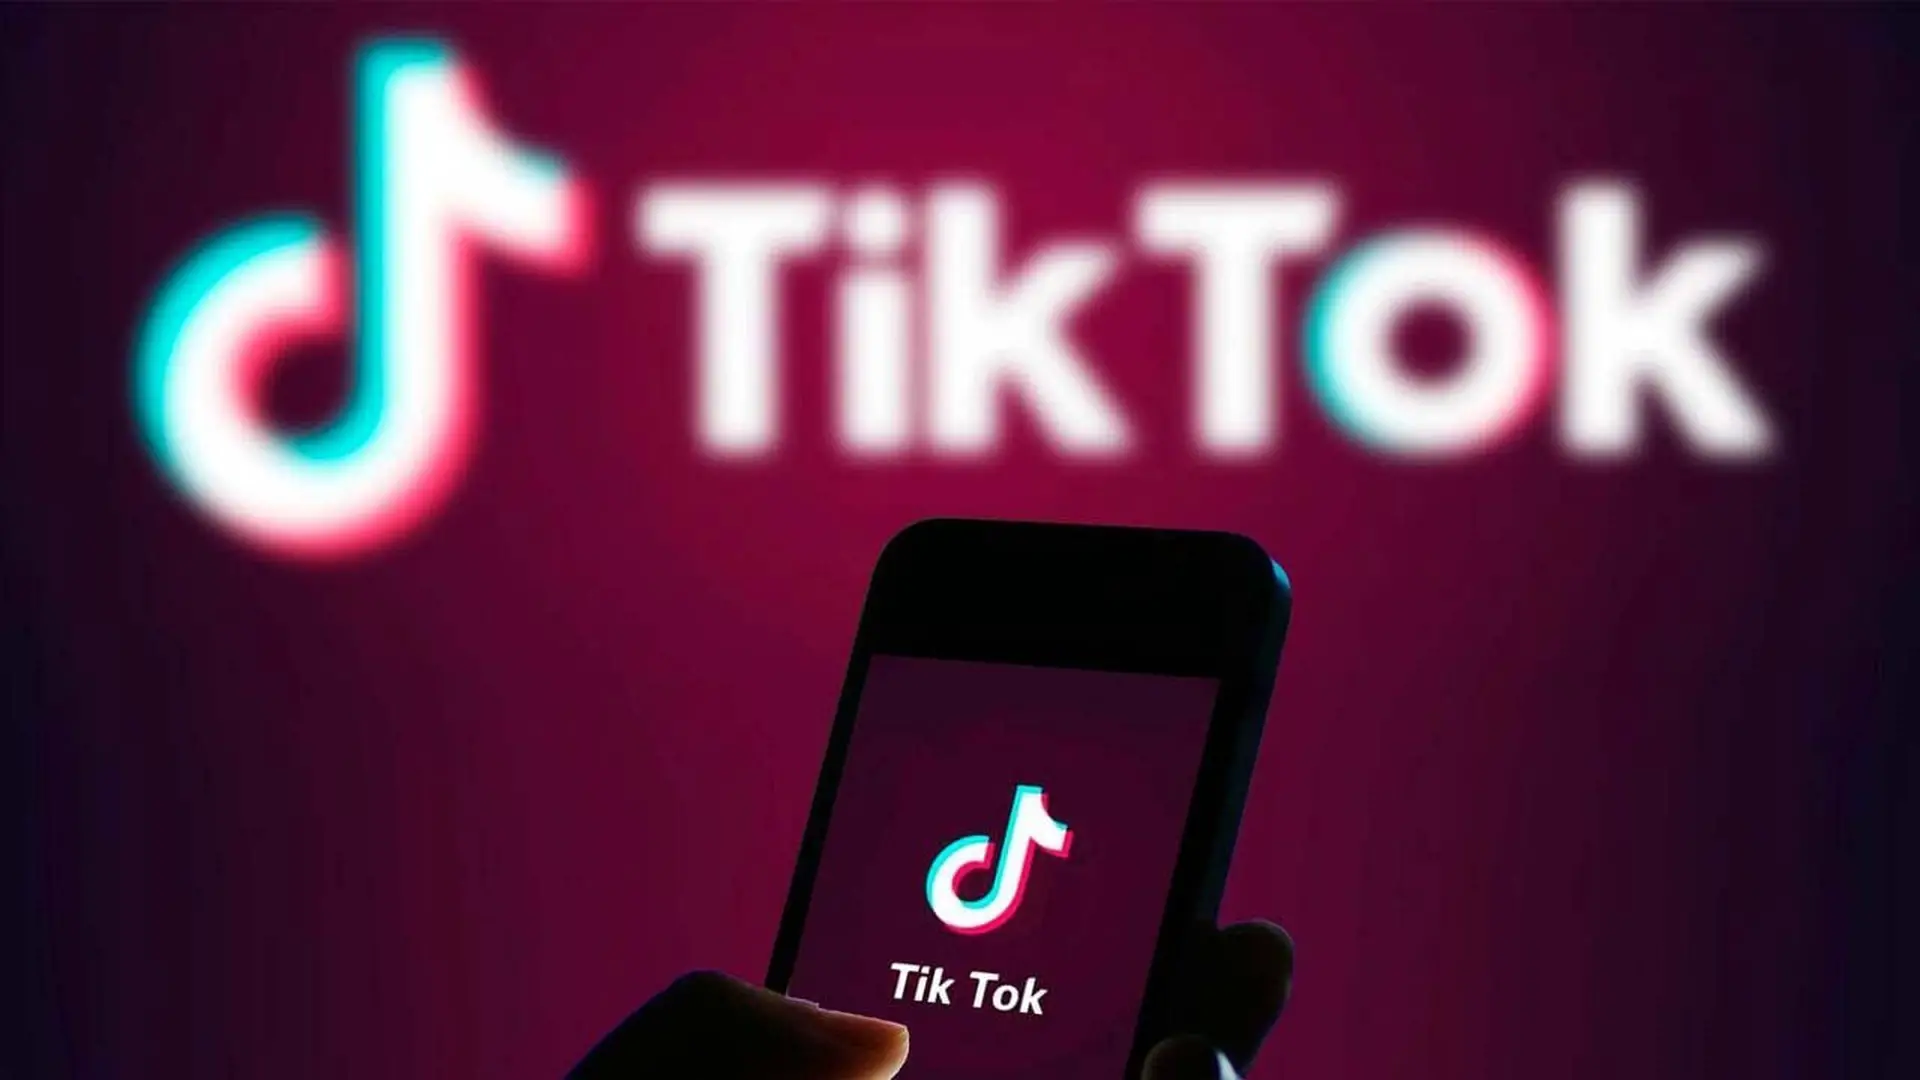 How much is 1 million diamonds on TikTok?